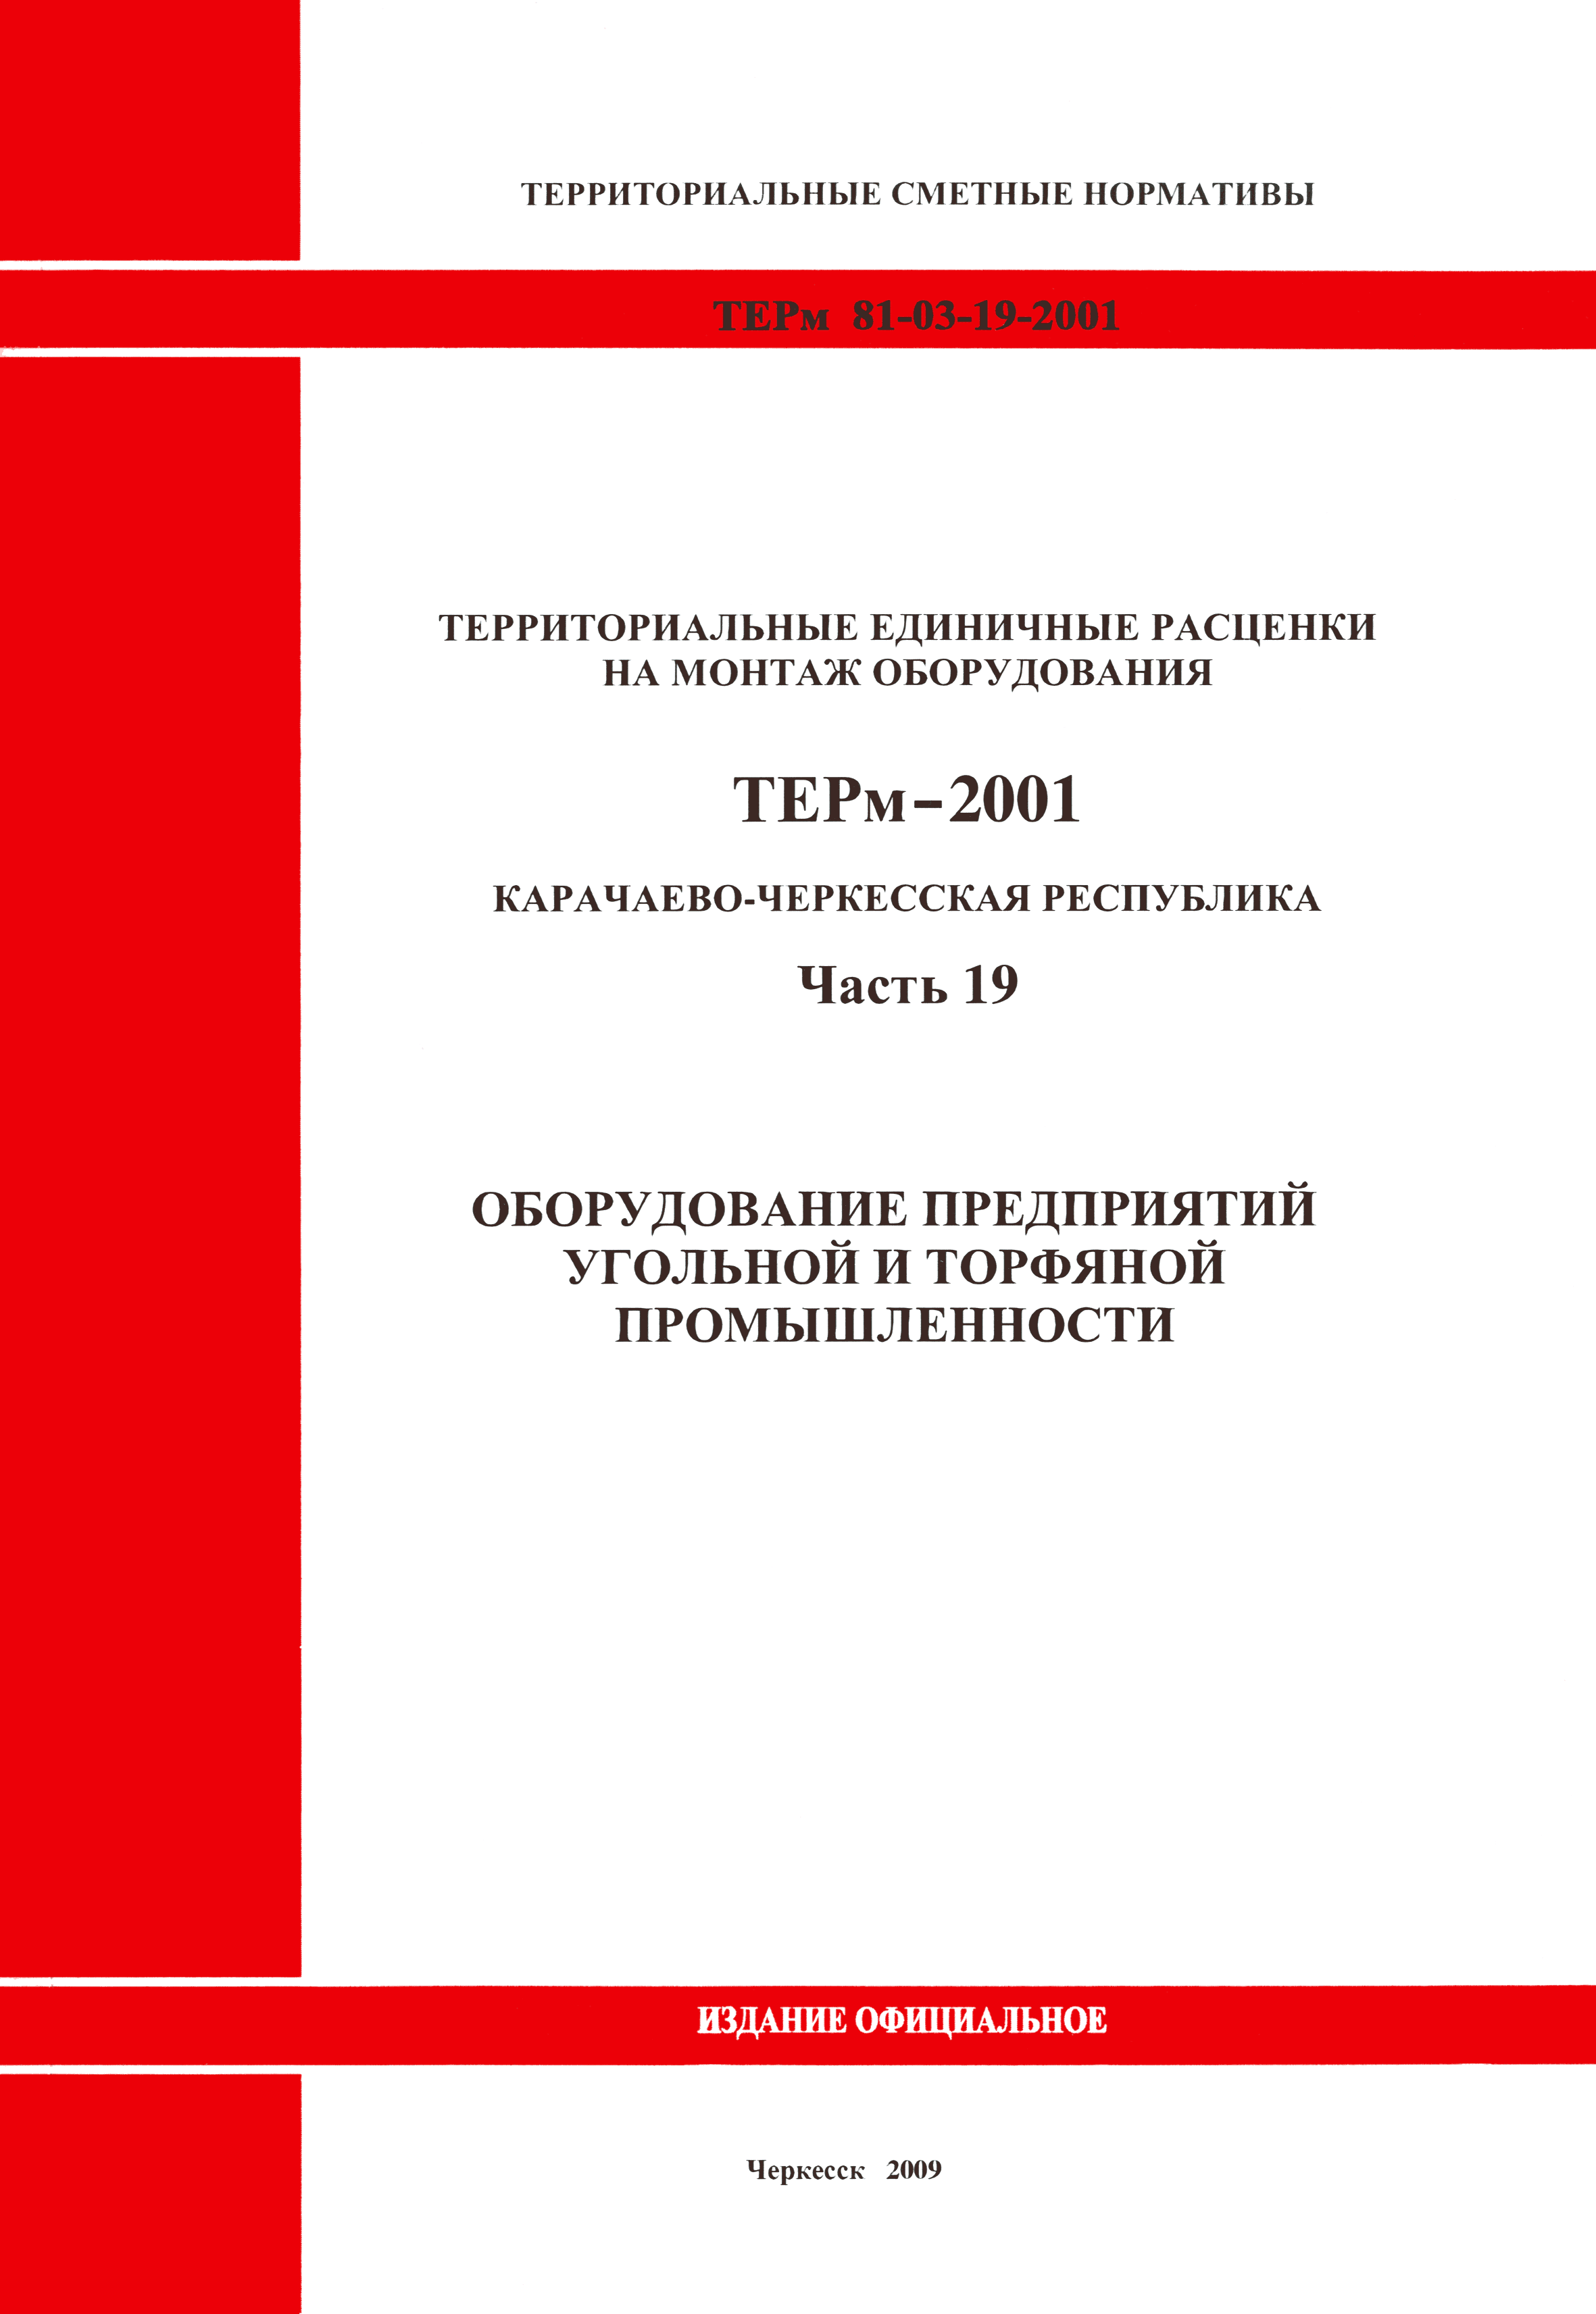 ТЕРм Карачаево-Черкесская Республика 19-2001